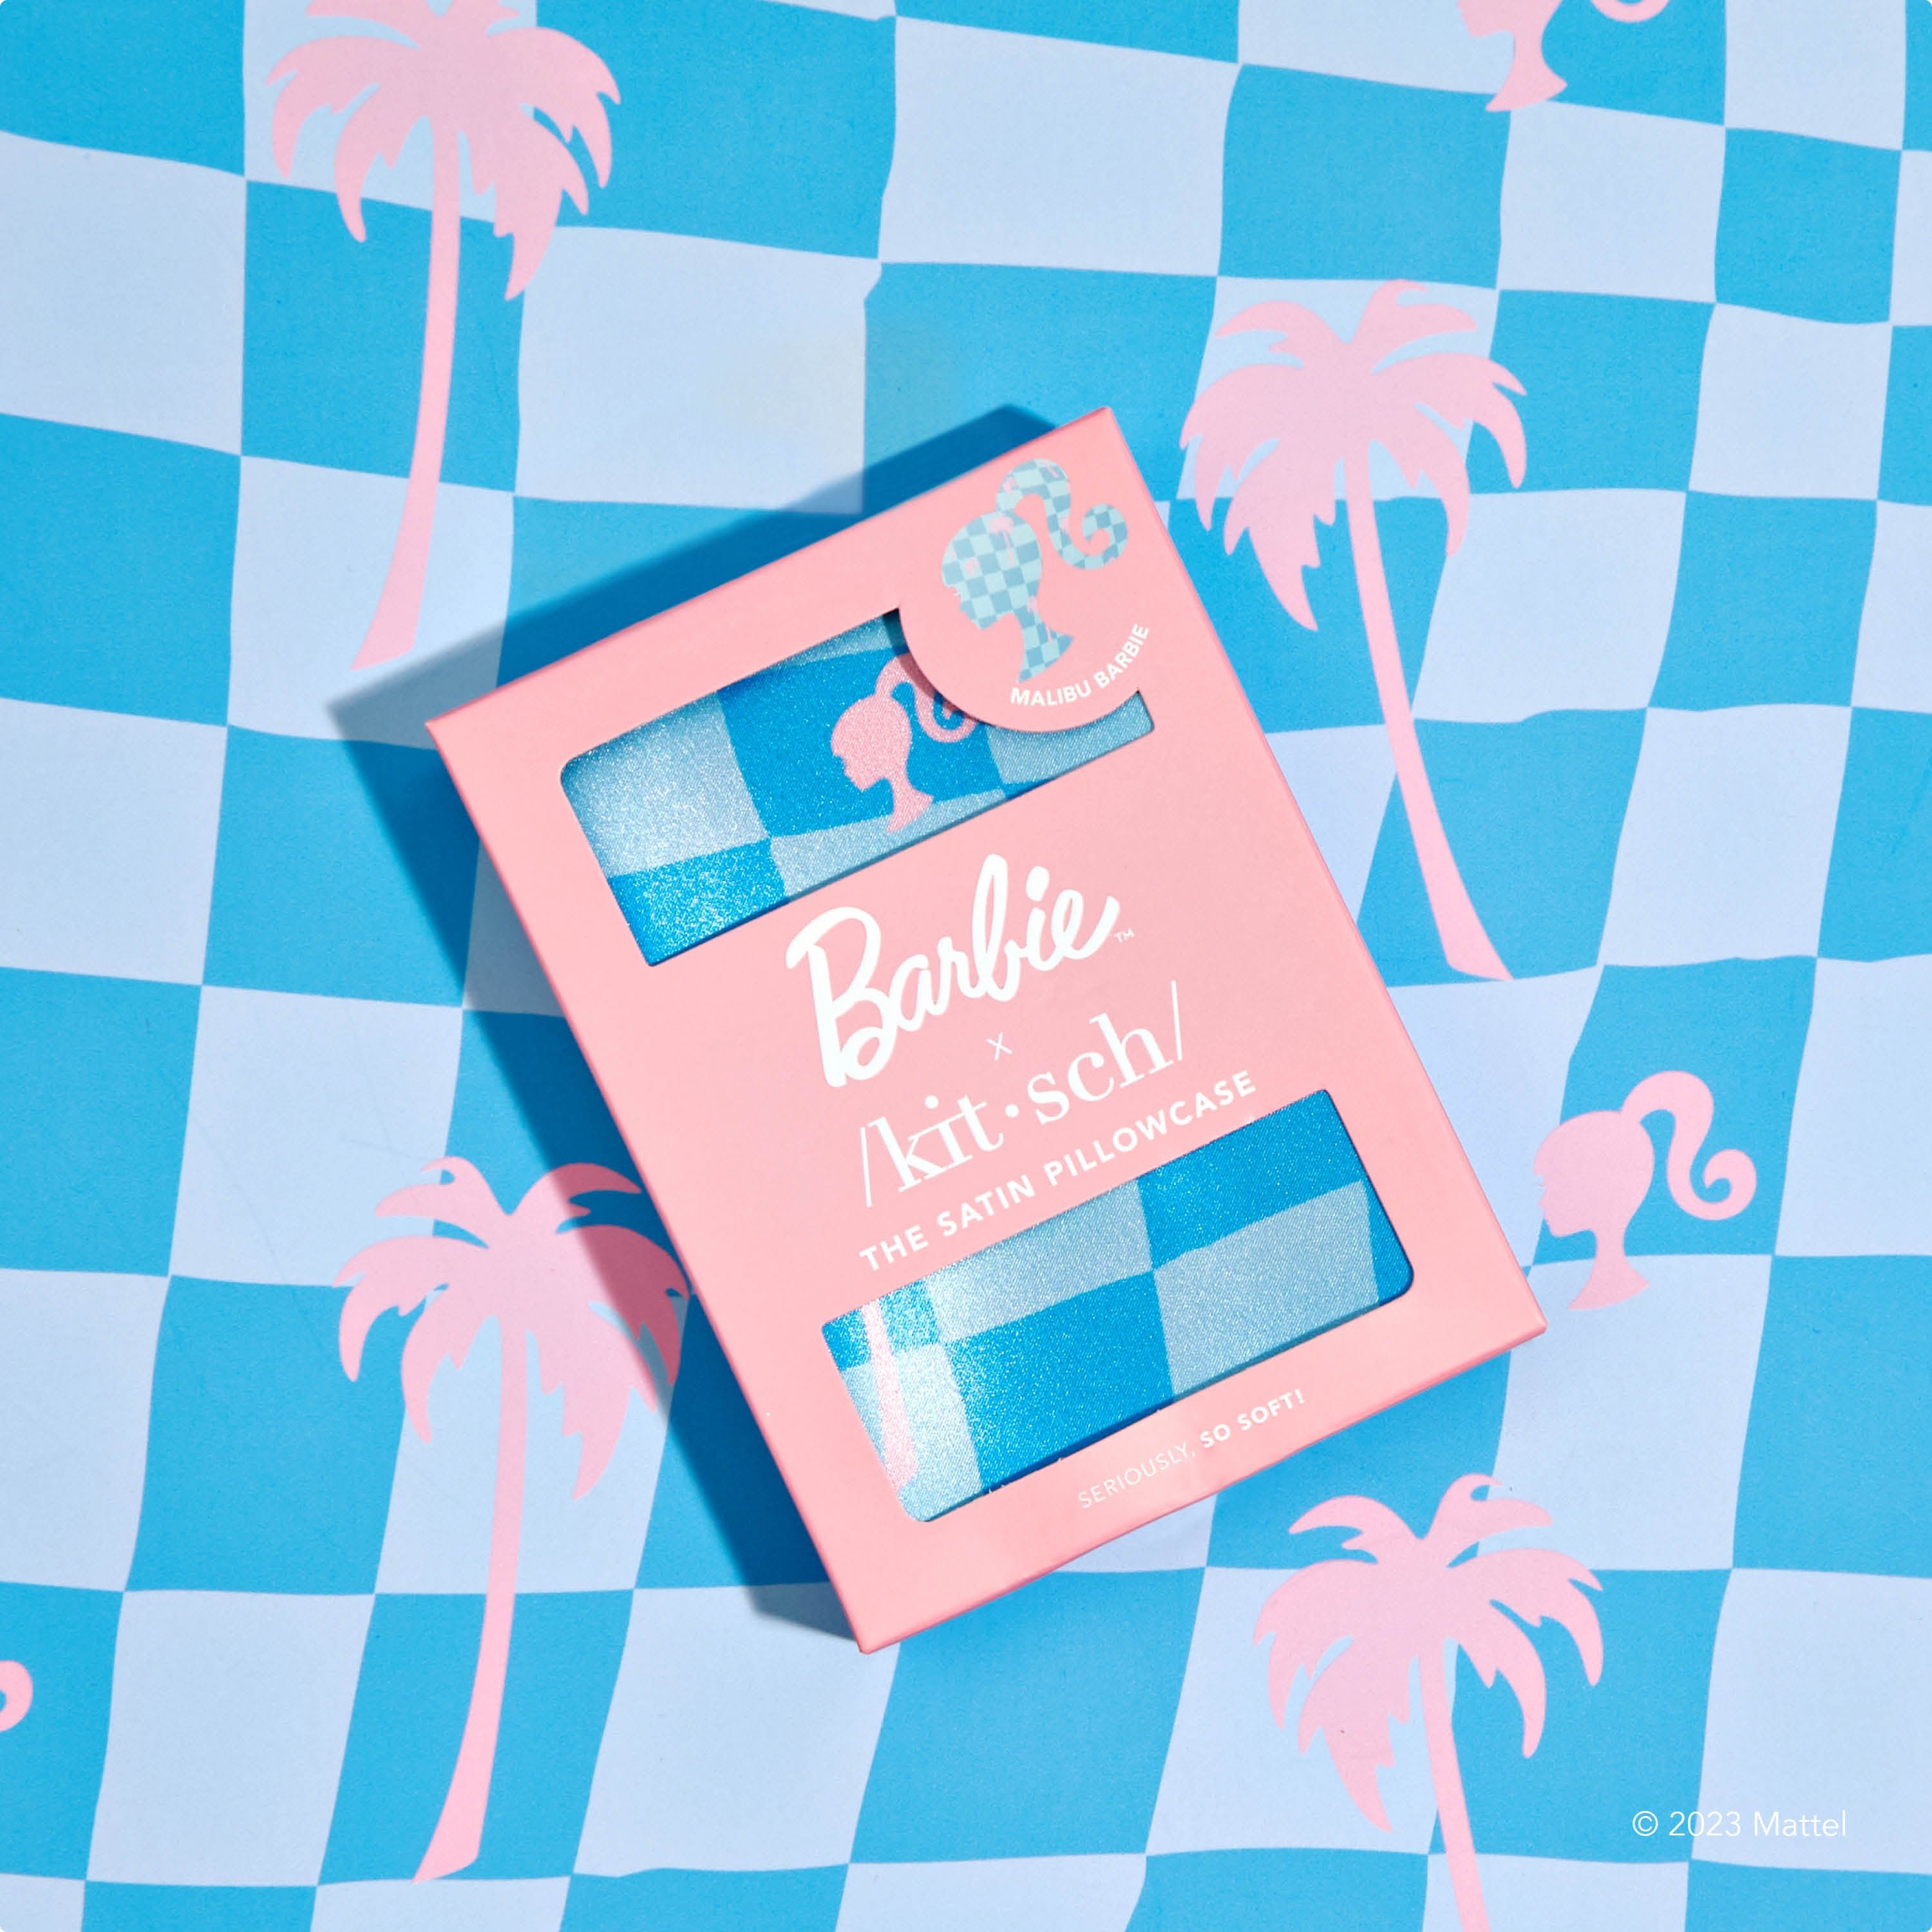 Barbie x Kitsch King örngott - Malibu Barbie